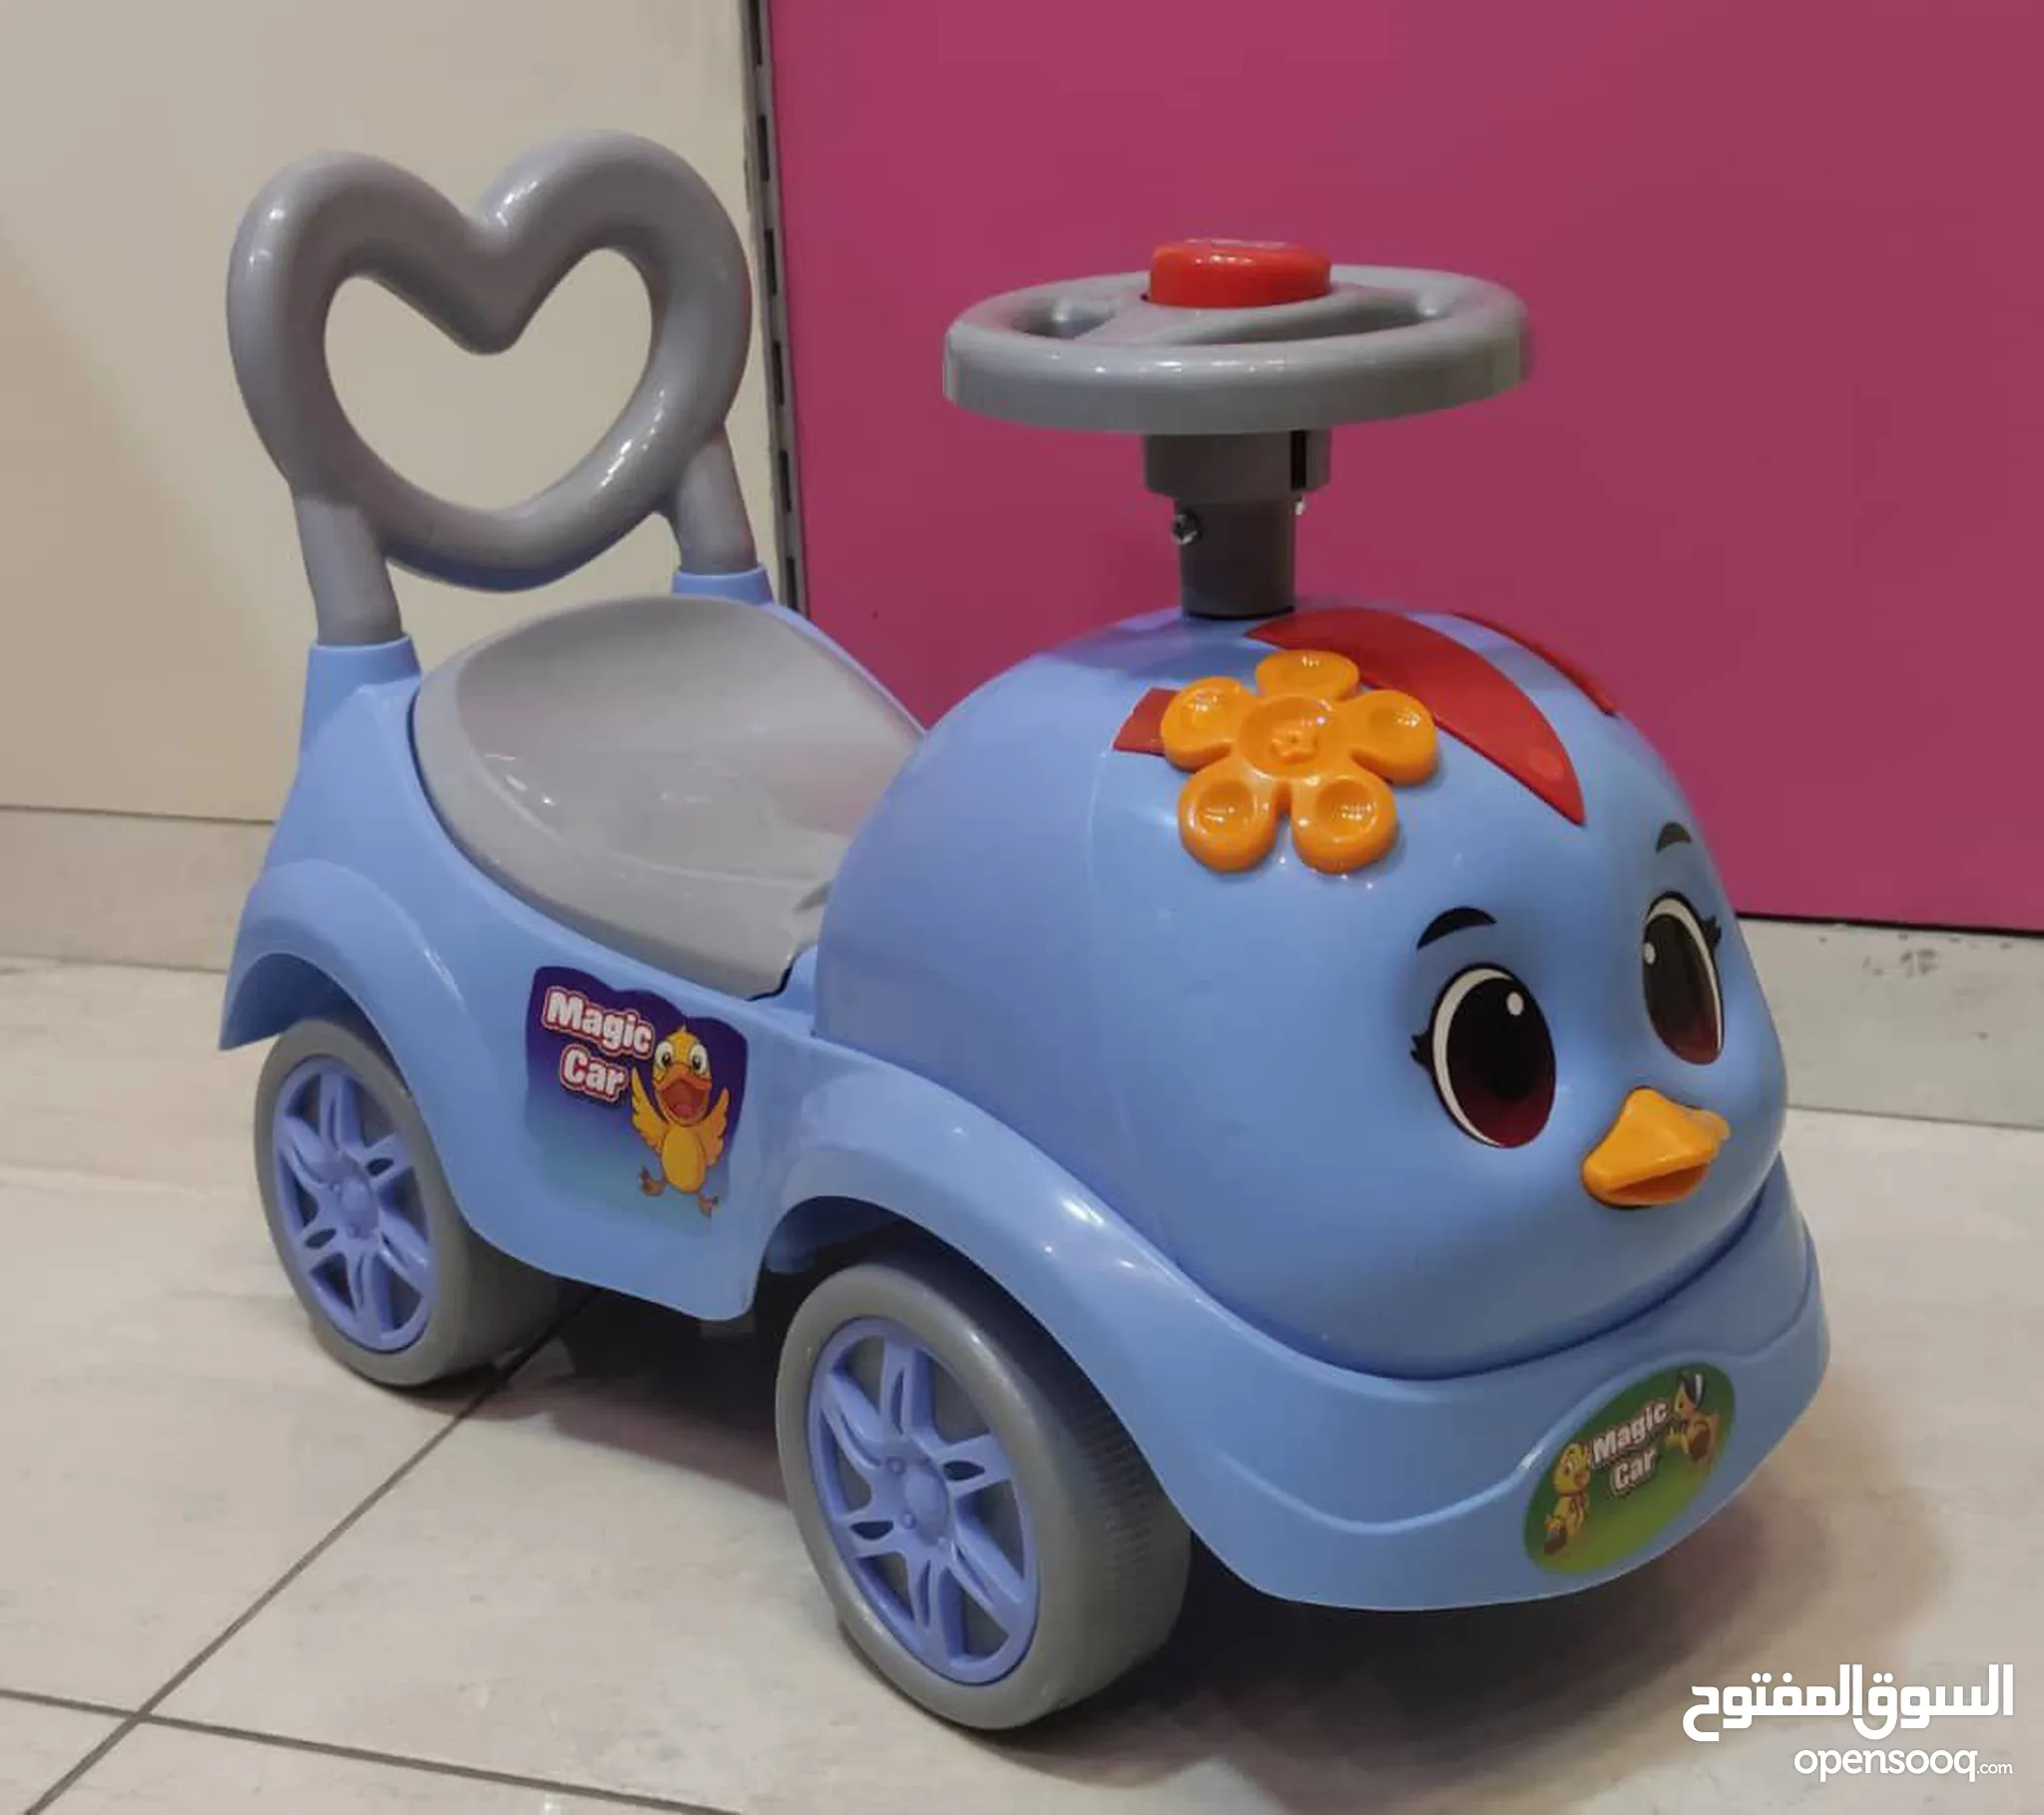 العاب اطفال للبيع : سيارات اطفال : افضل اسعار : سوريا | السوق المفتوح